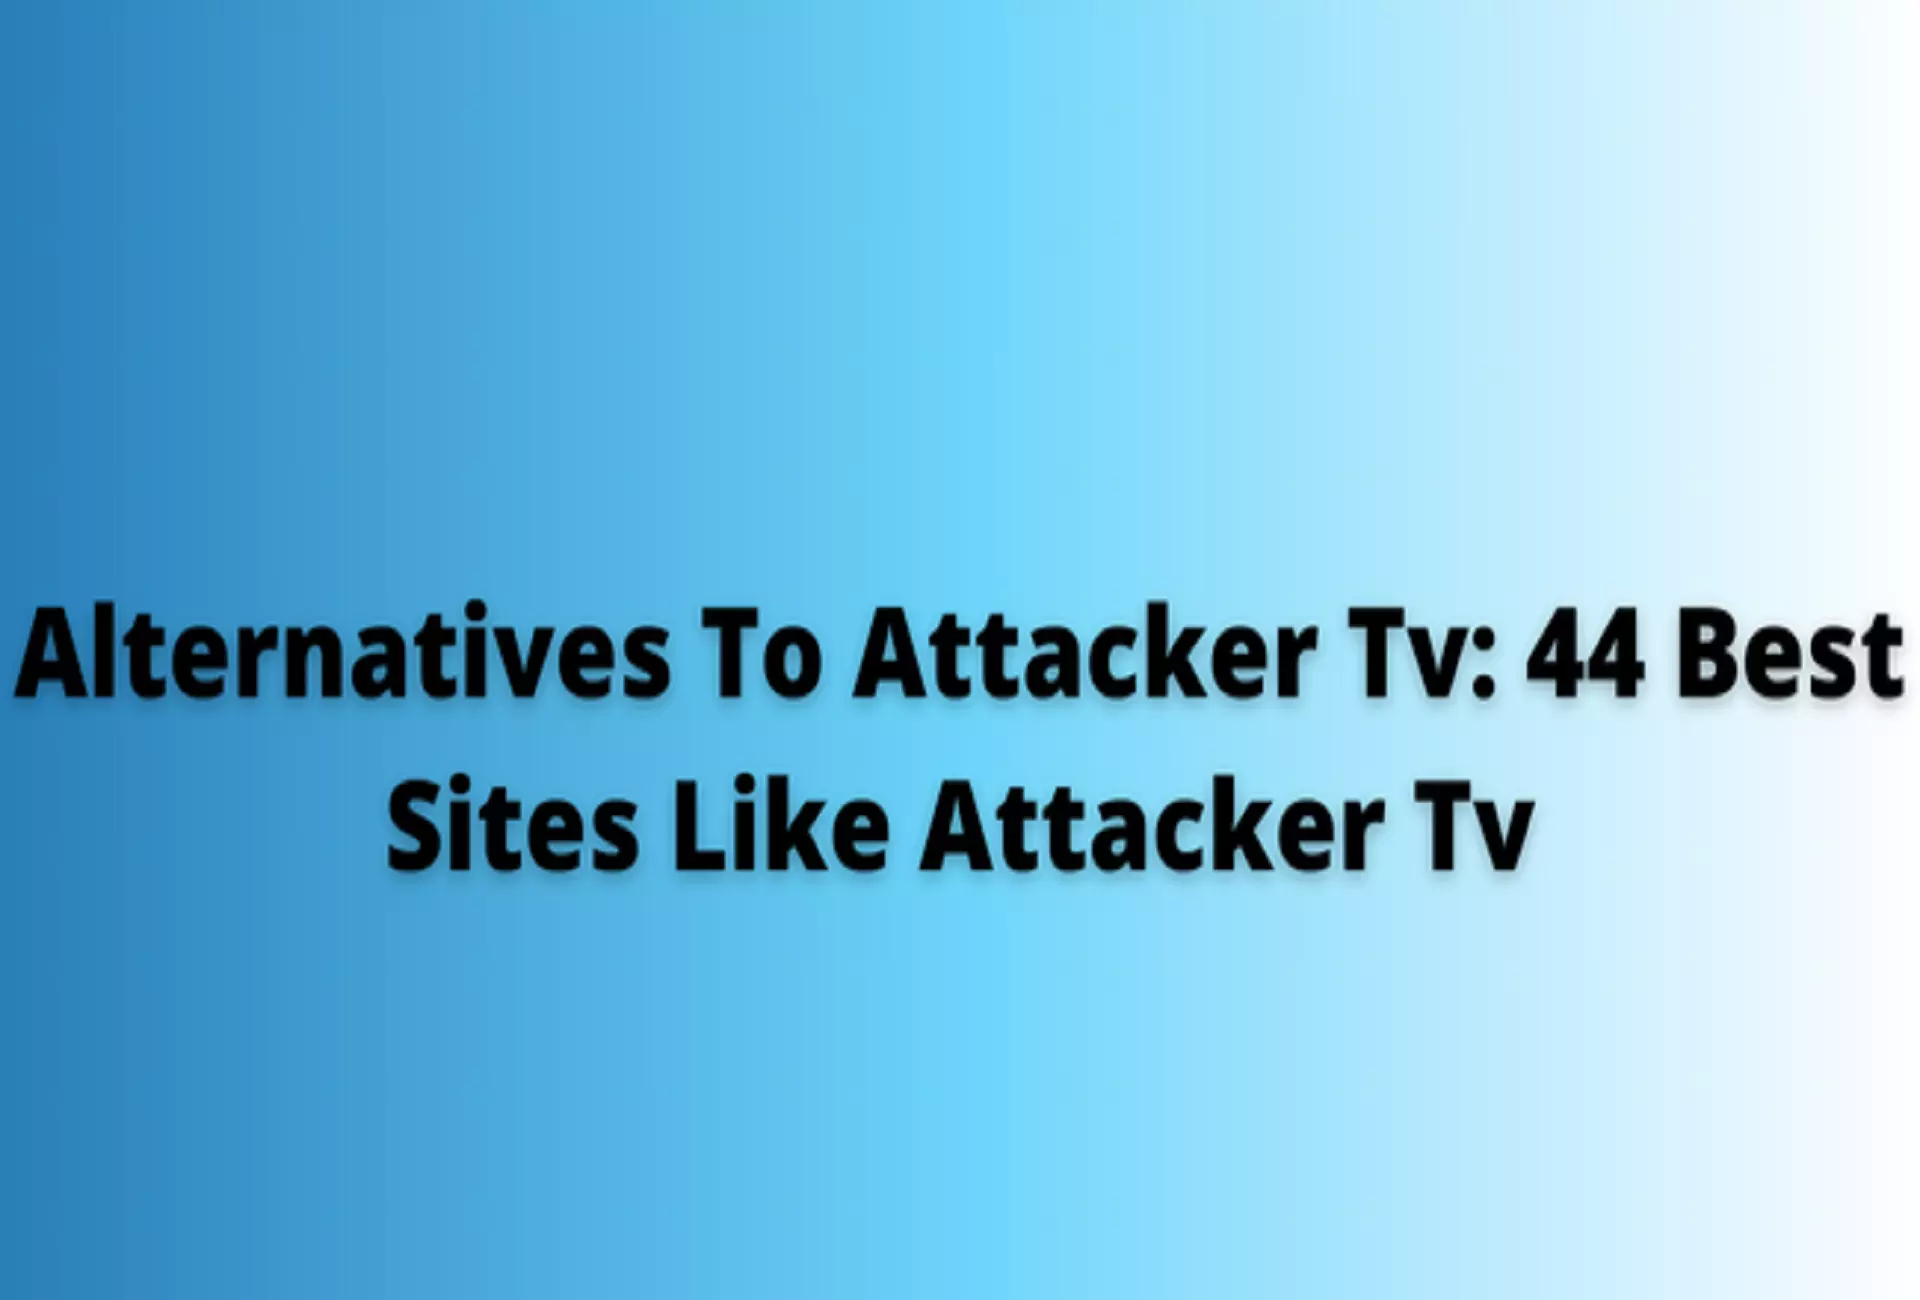 Alternatives To Attacker Tv: 44 Best Sites Like Attacker Tv